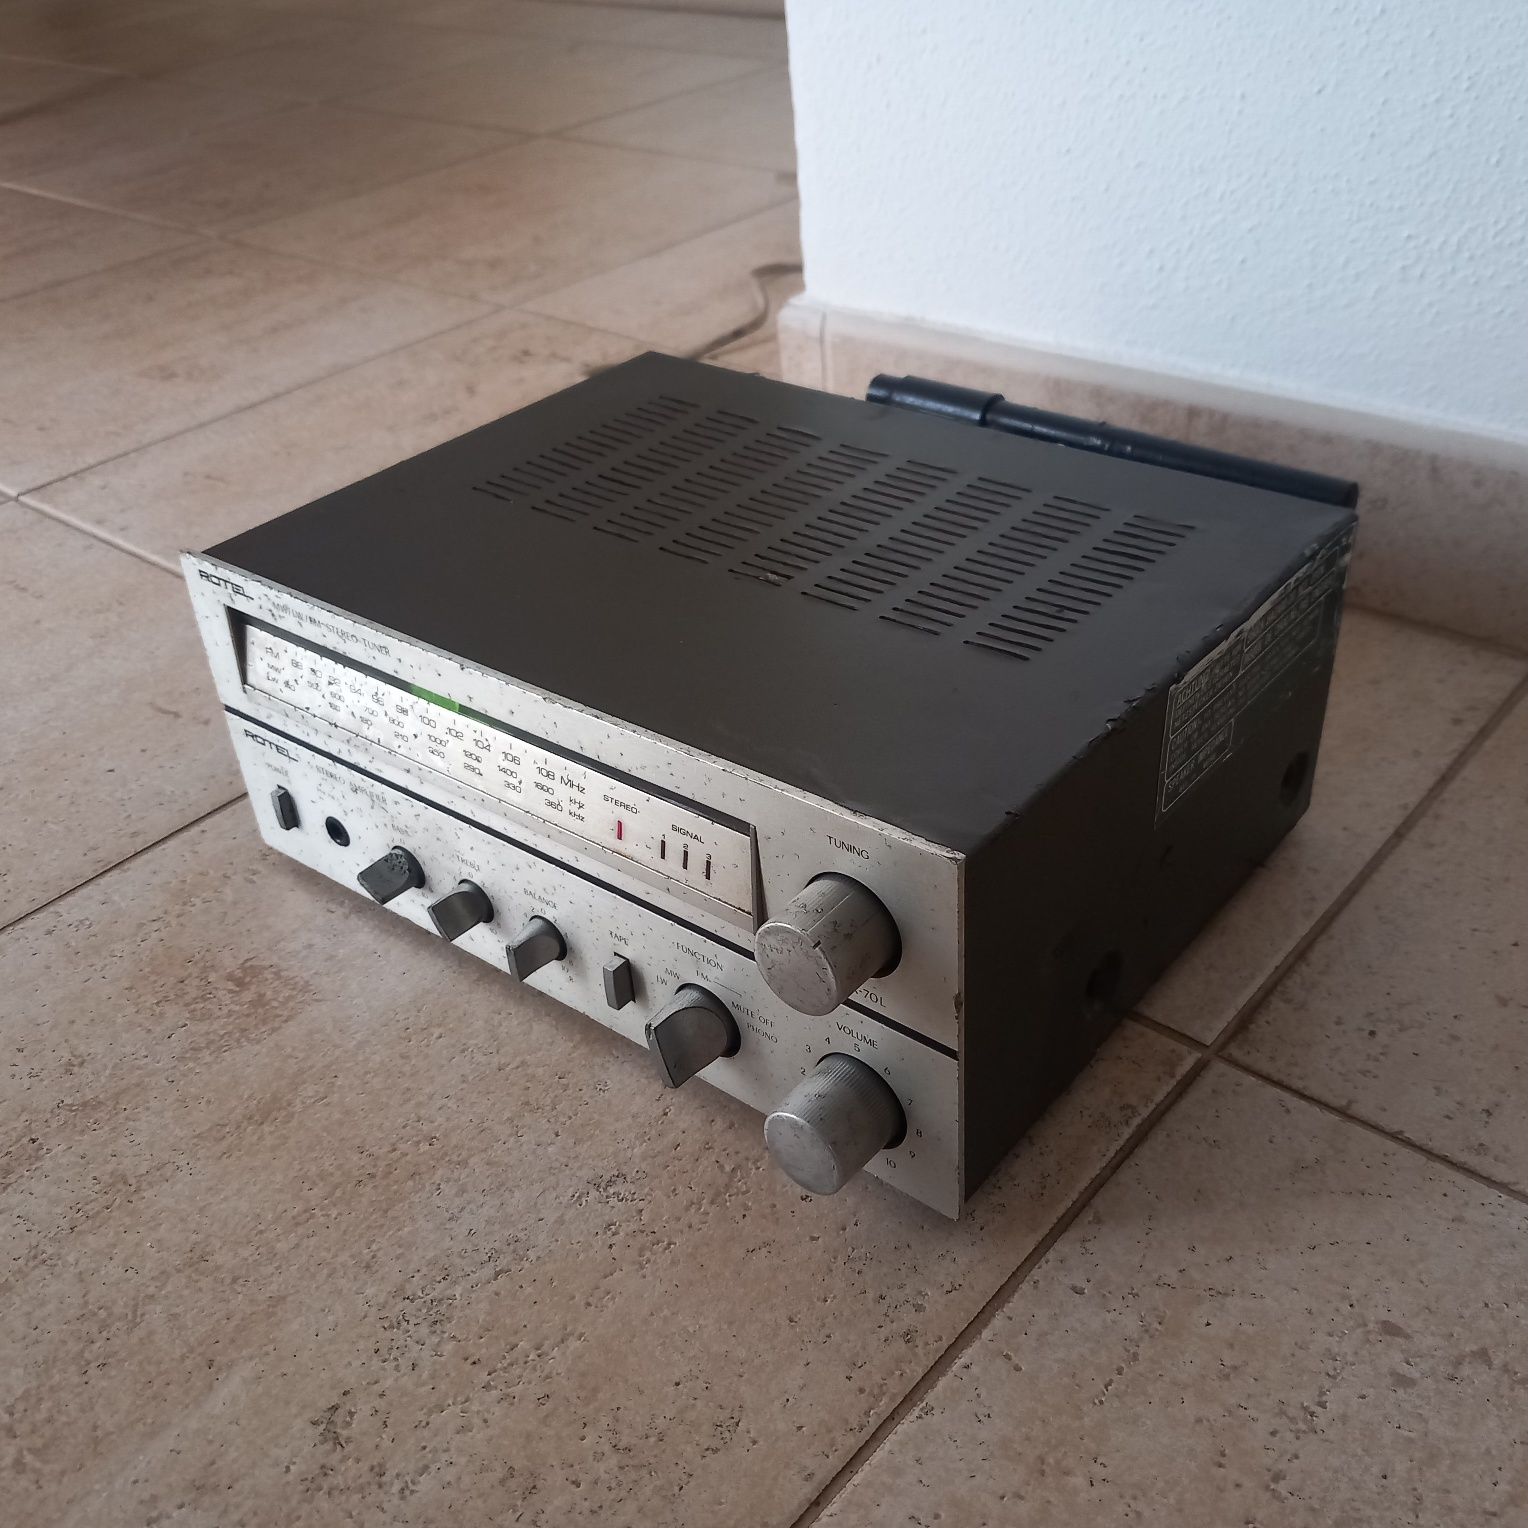 Rotel stereo receiver/Amplificador